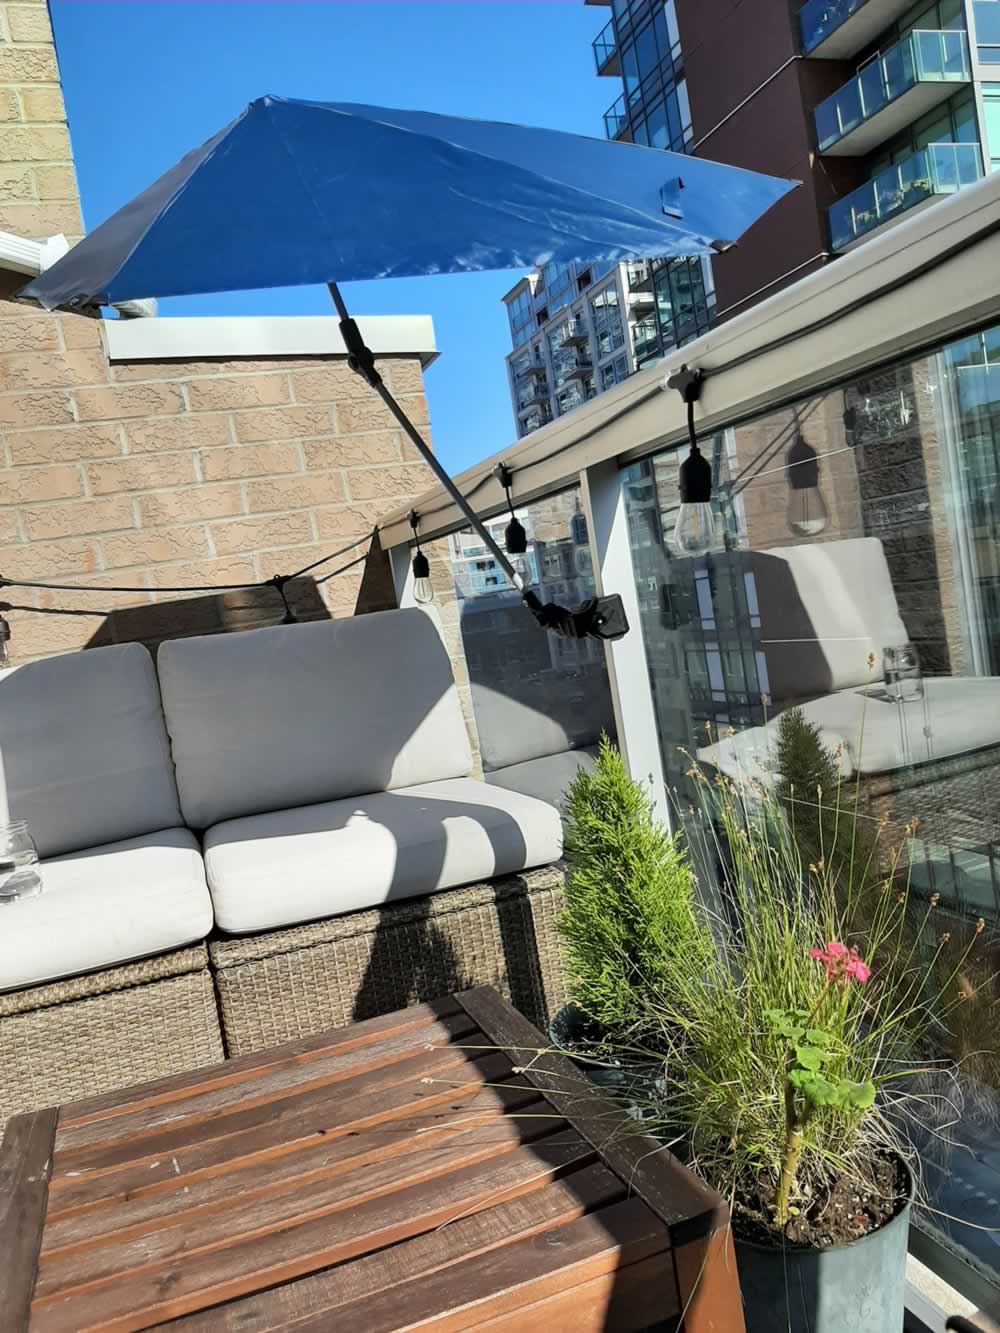 Balcony umbrella providing shade on seating area.